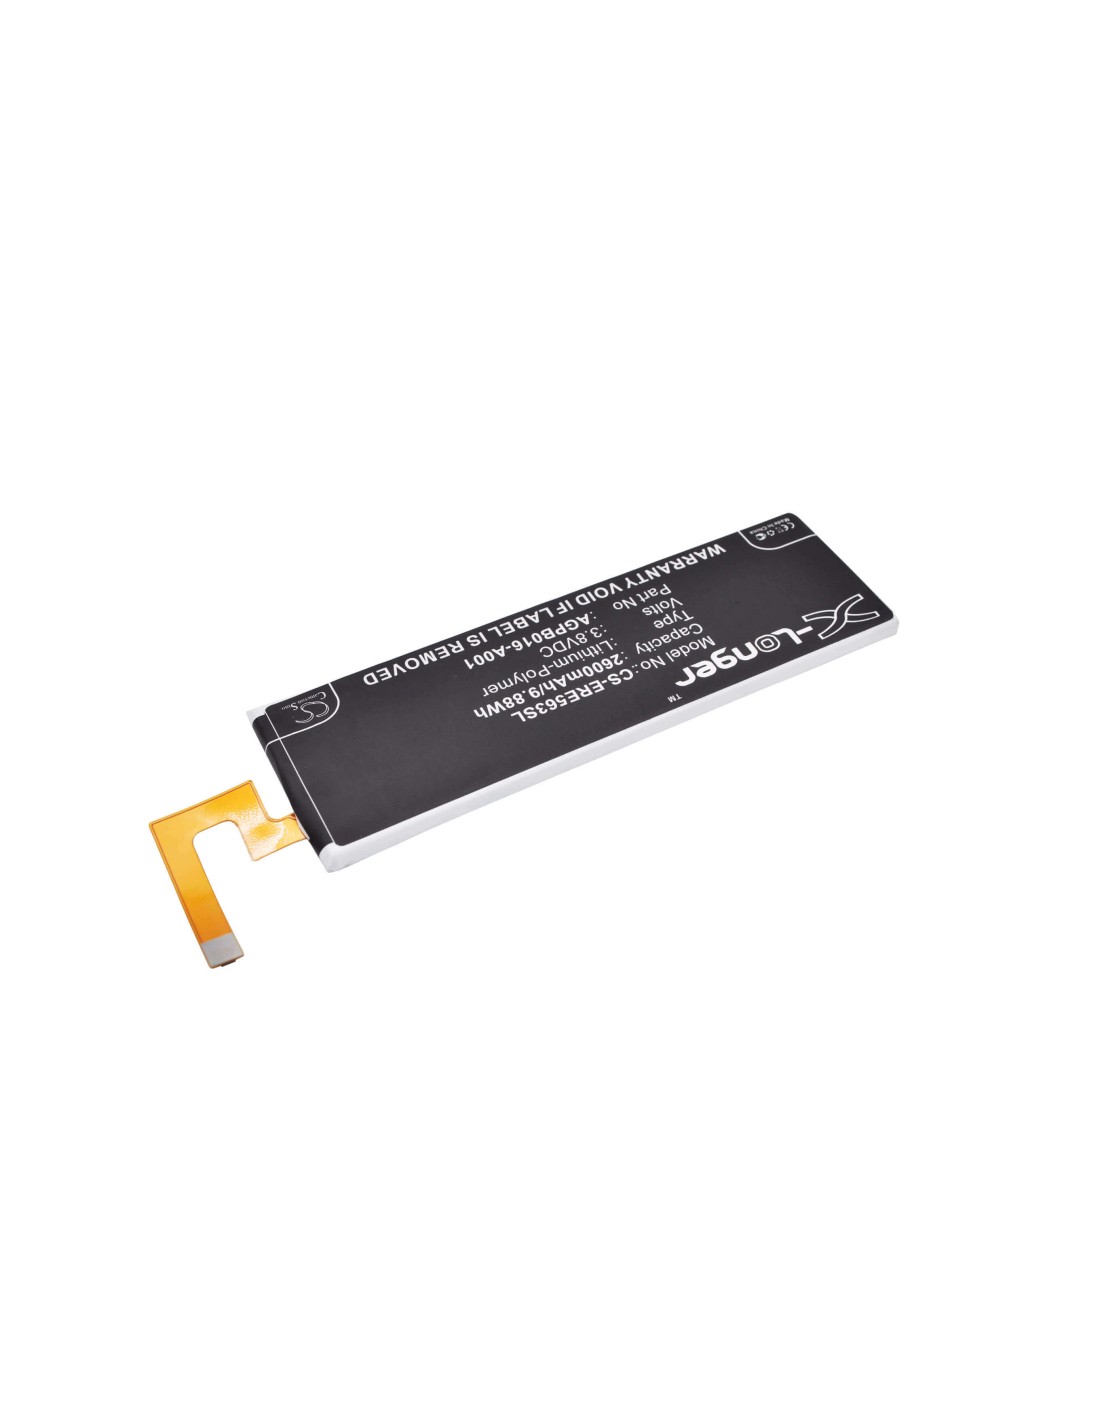 Battery for Sony Ericsson Xperia M5, Xperia M5 dual, E5633 3.8V, 2600mAh - 9.88Wh